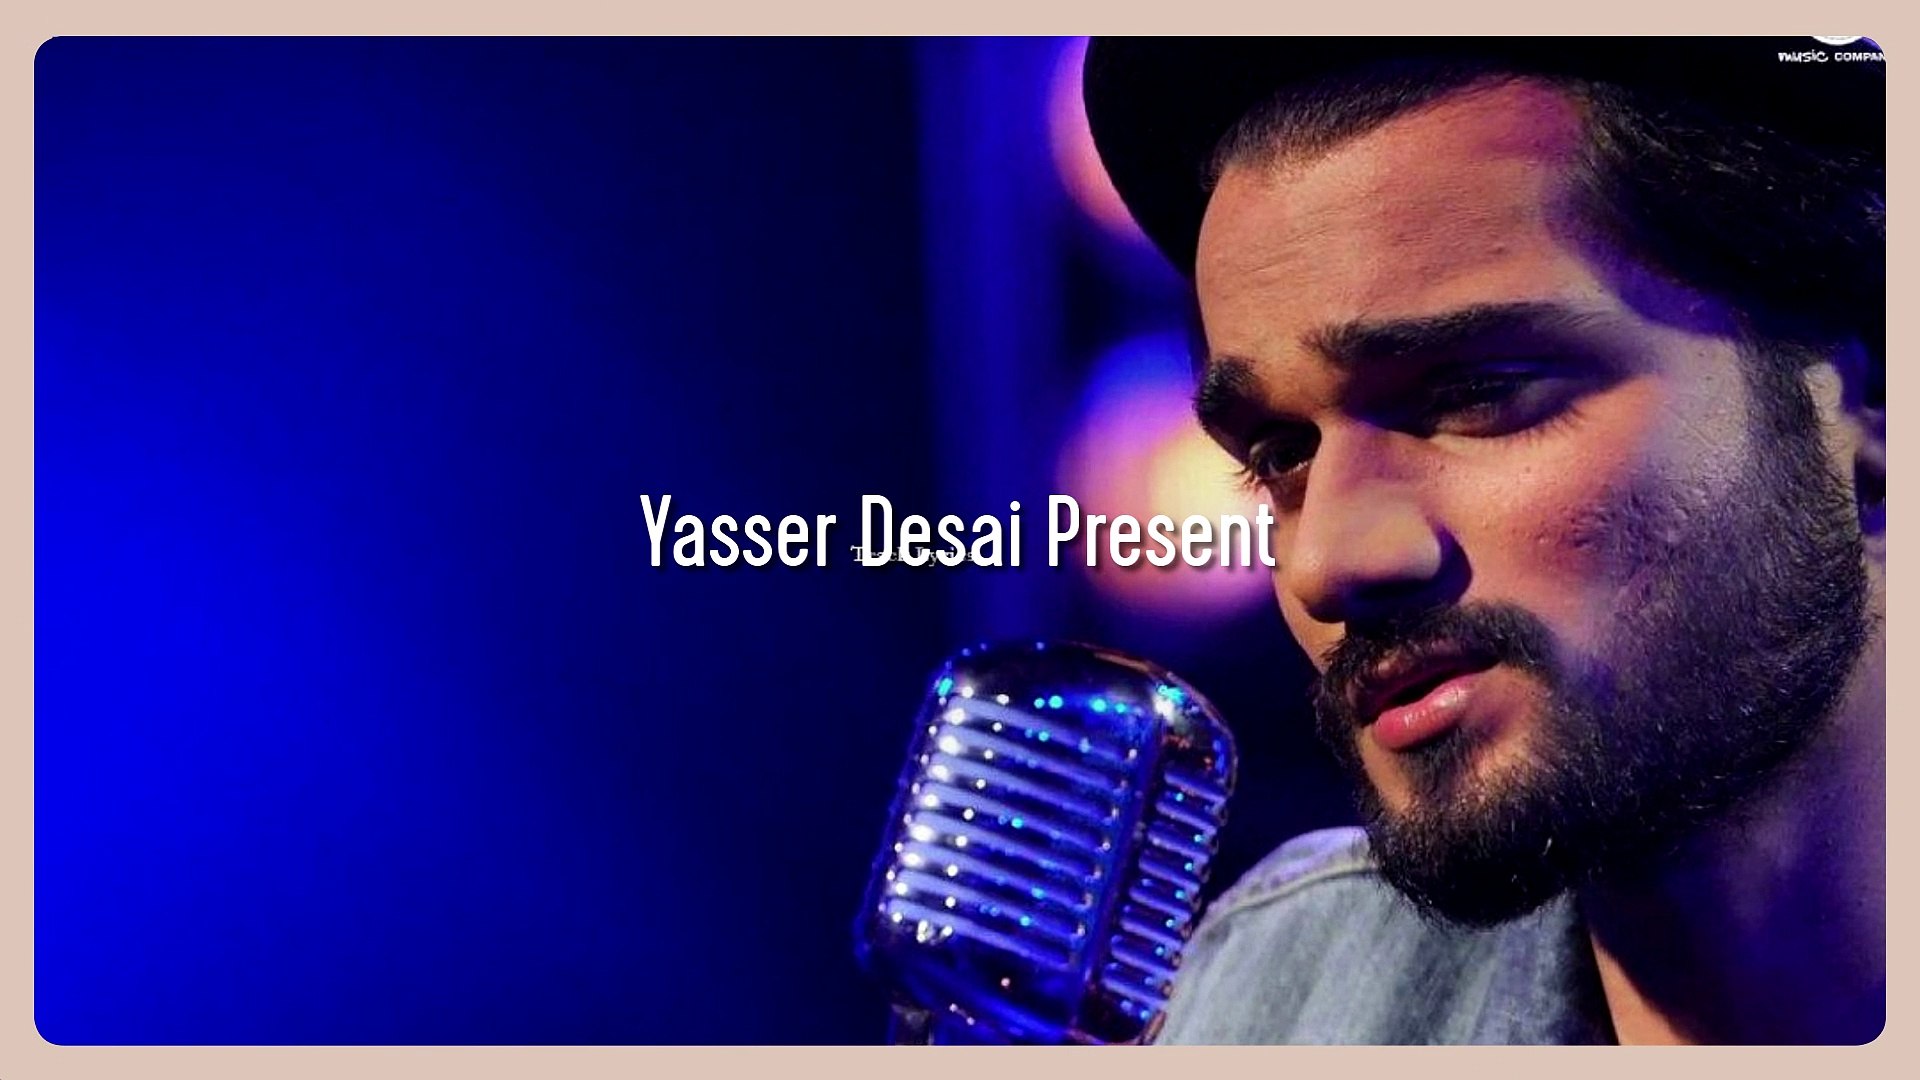 Dil Mang Raha Hai Lyrics Sanaya Irani Yasser Desai Promo Video - video  Dailymotion